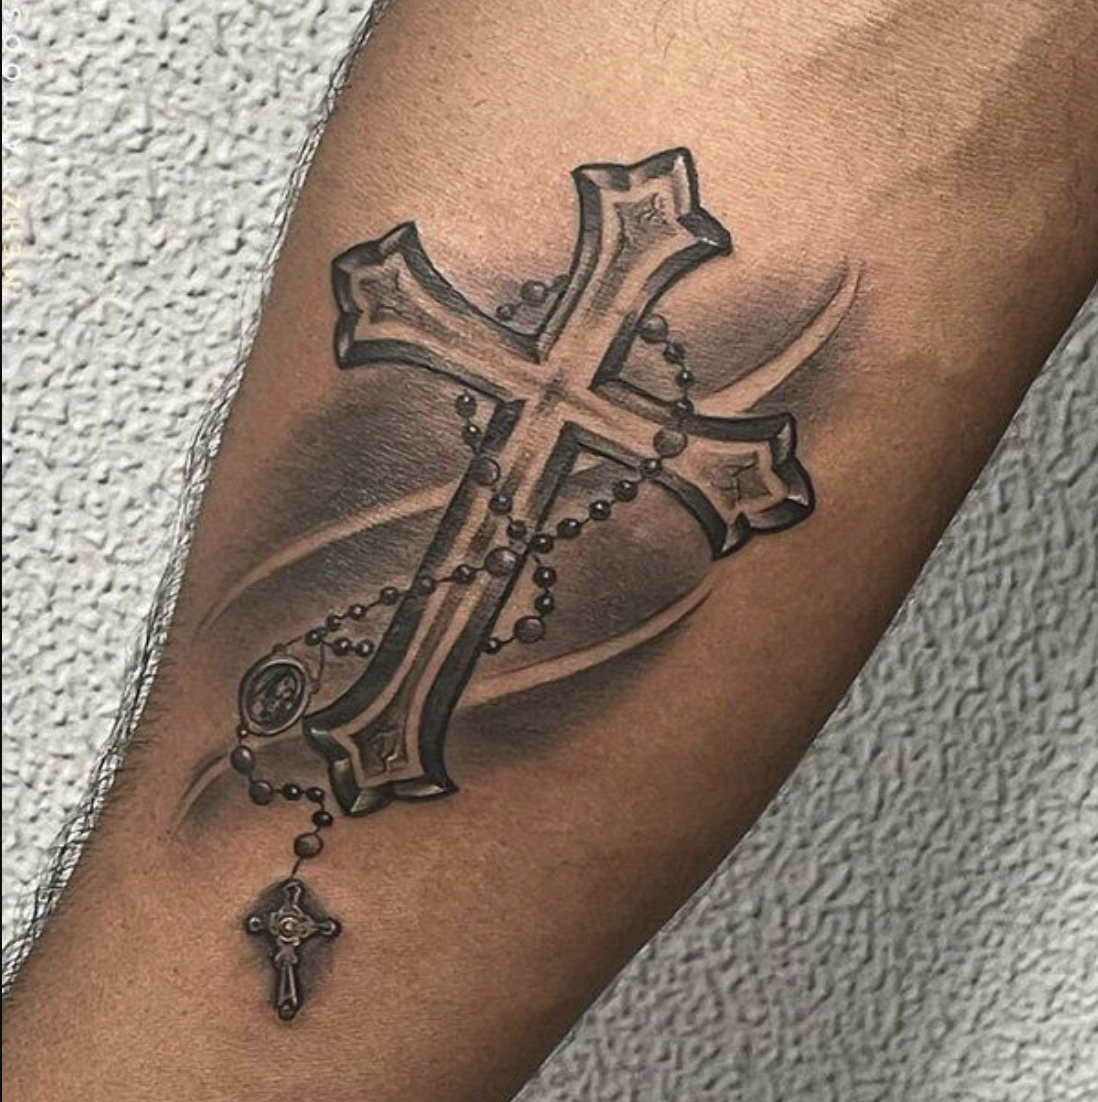 Cross Tattoos For Men: Popular Design of Art - Tattoos Park | Cross tattoo  for men, Cross tattoo designs, Tattoos for guys